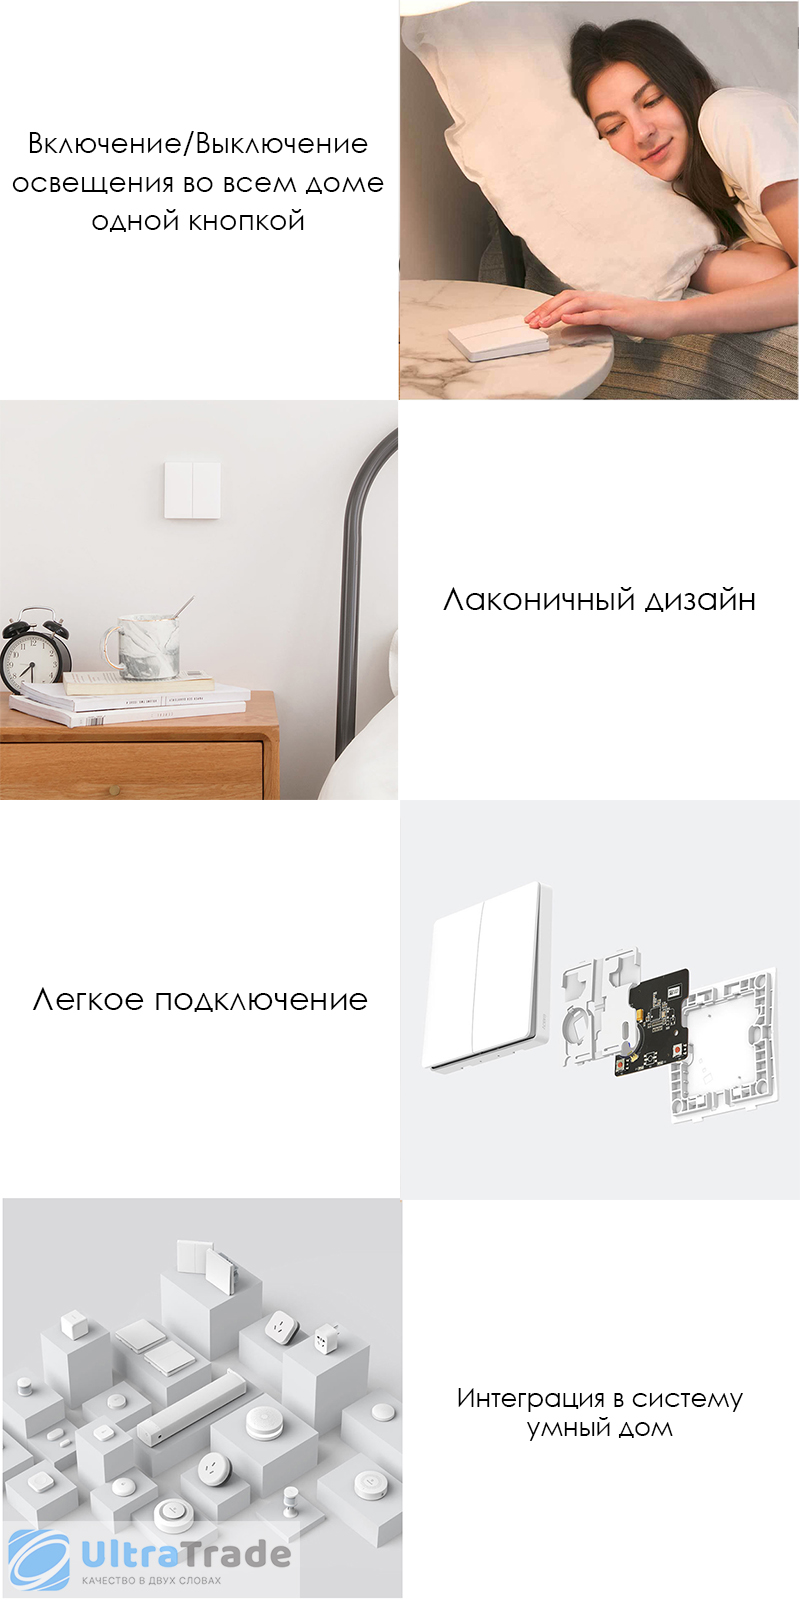 Беспроводной выключатель двухклавишный Xiaomi Aqara Smart Light Control Grey (WXKG02LM)